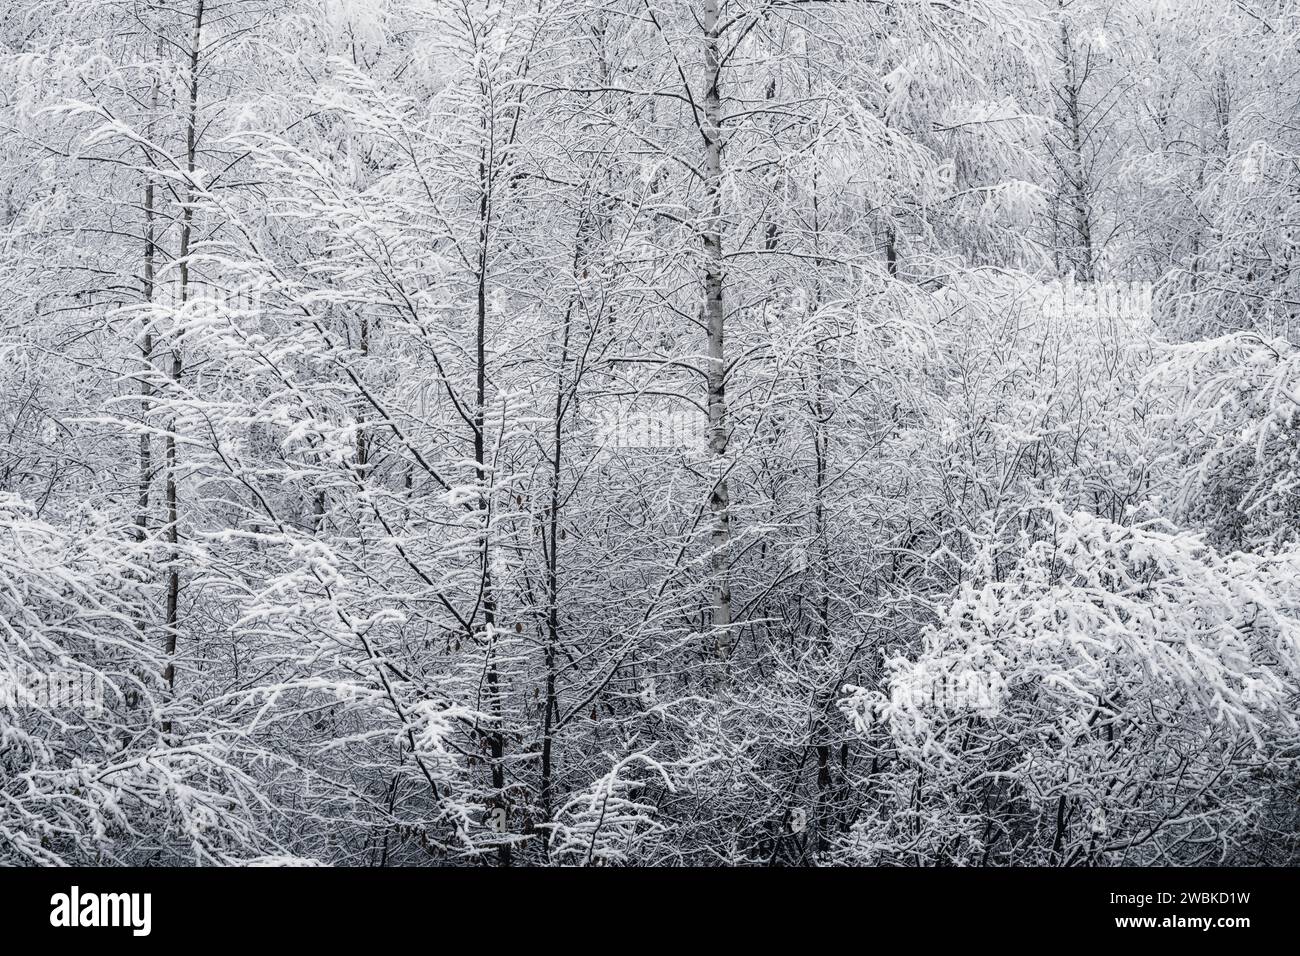 Der erste Schnee im Wald, schneebedeckte schmale Bäume und Äste, winterliche Landschaft, kühle Farben Stockfoto